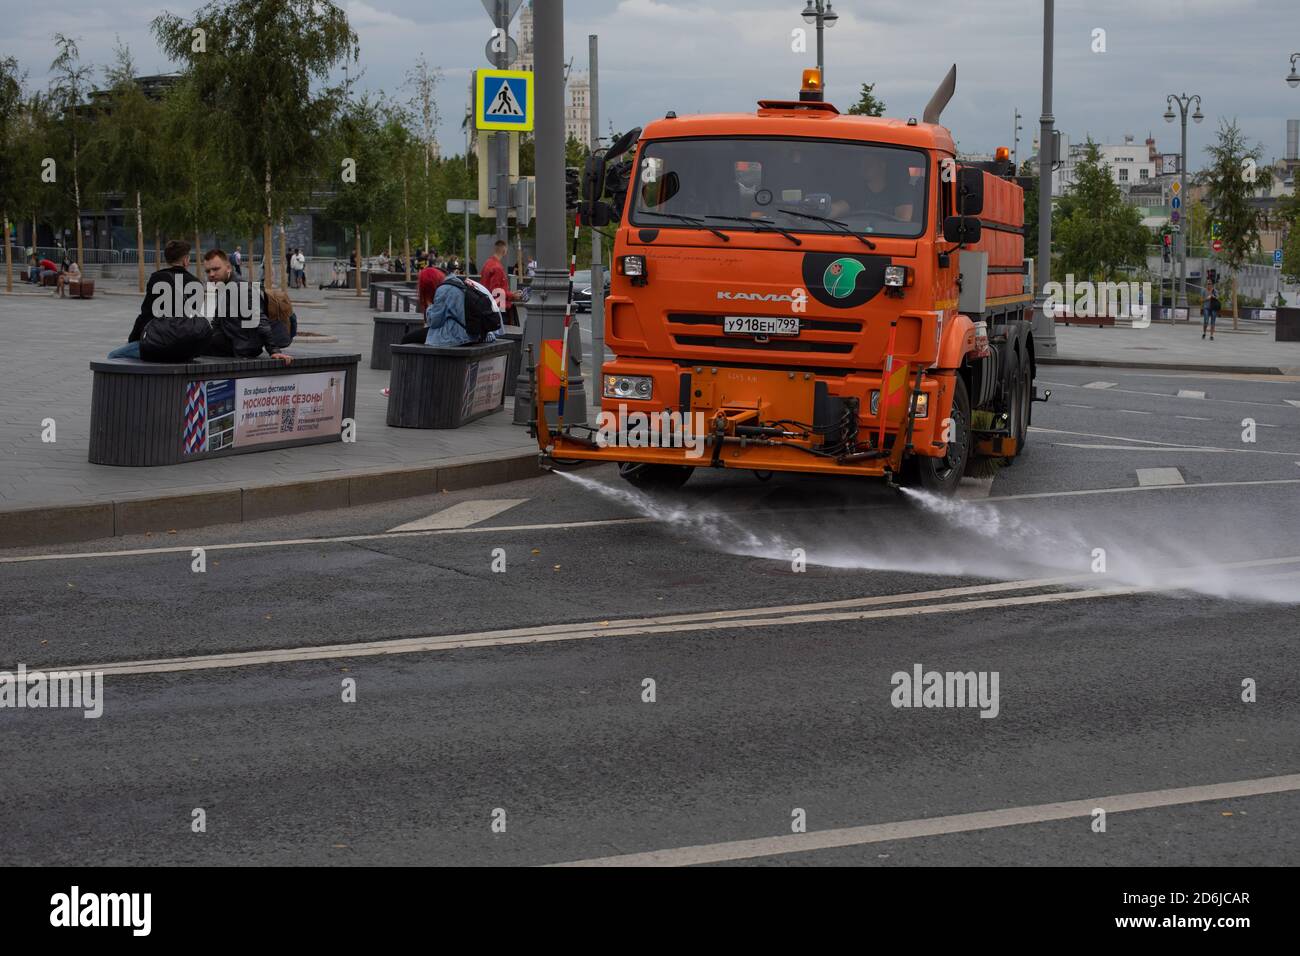 Mosca, Russia - 24 agosto 2020: Macchina per innaffiare Kamaz lavando la strada della capitale con shampoo e acqua. Foto Stock